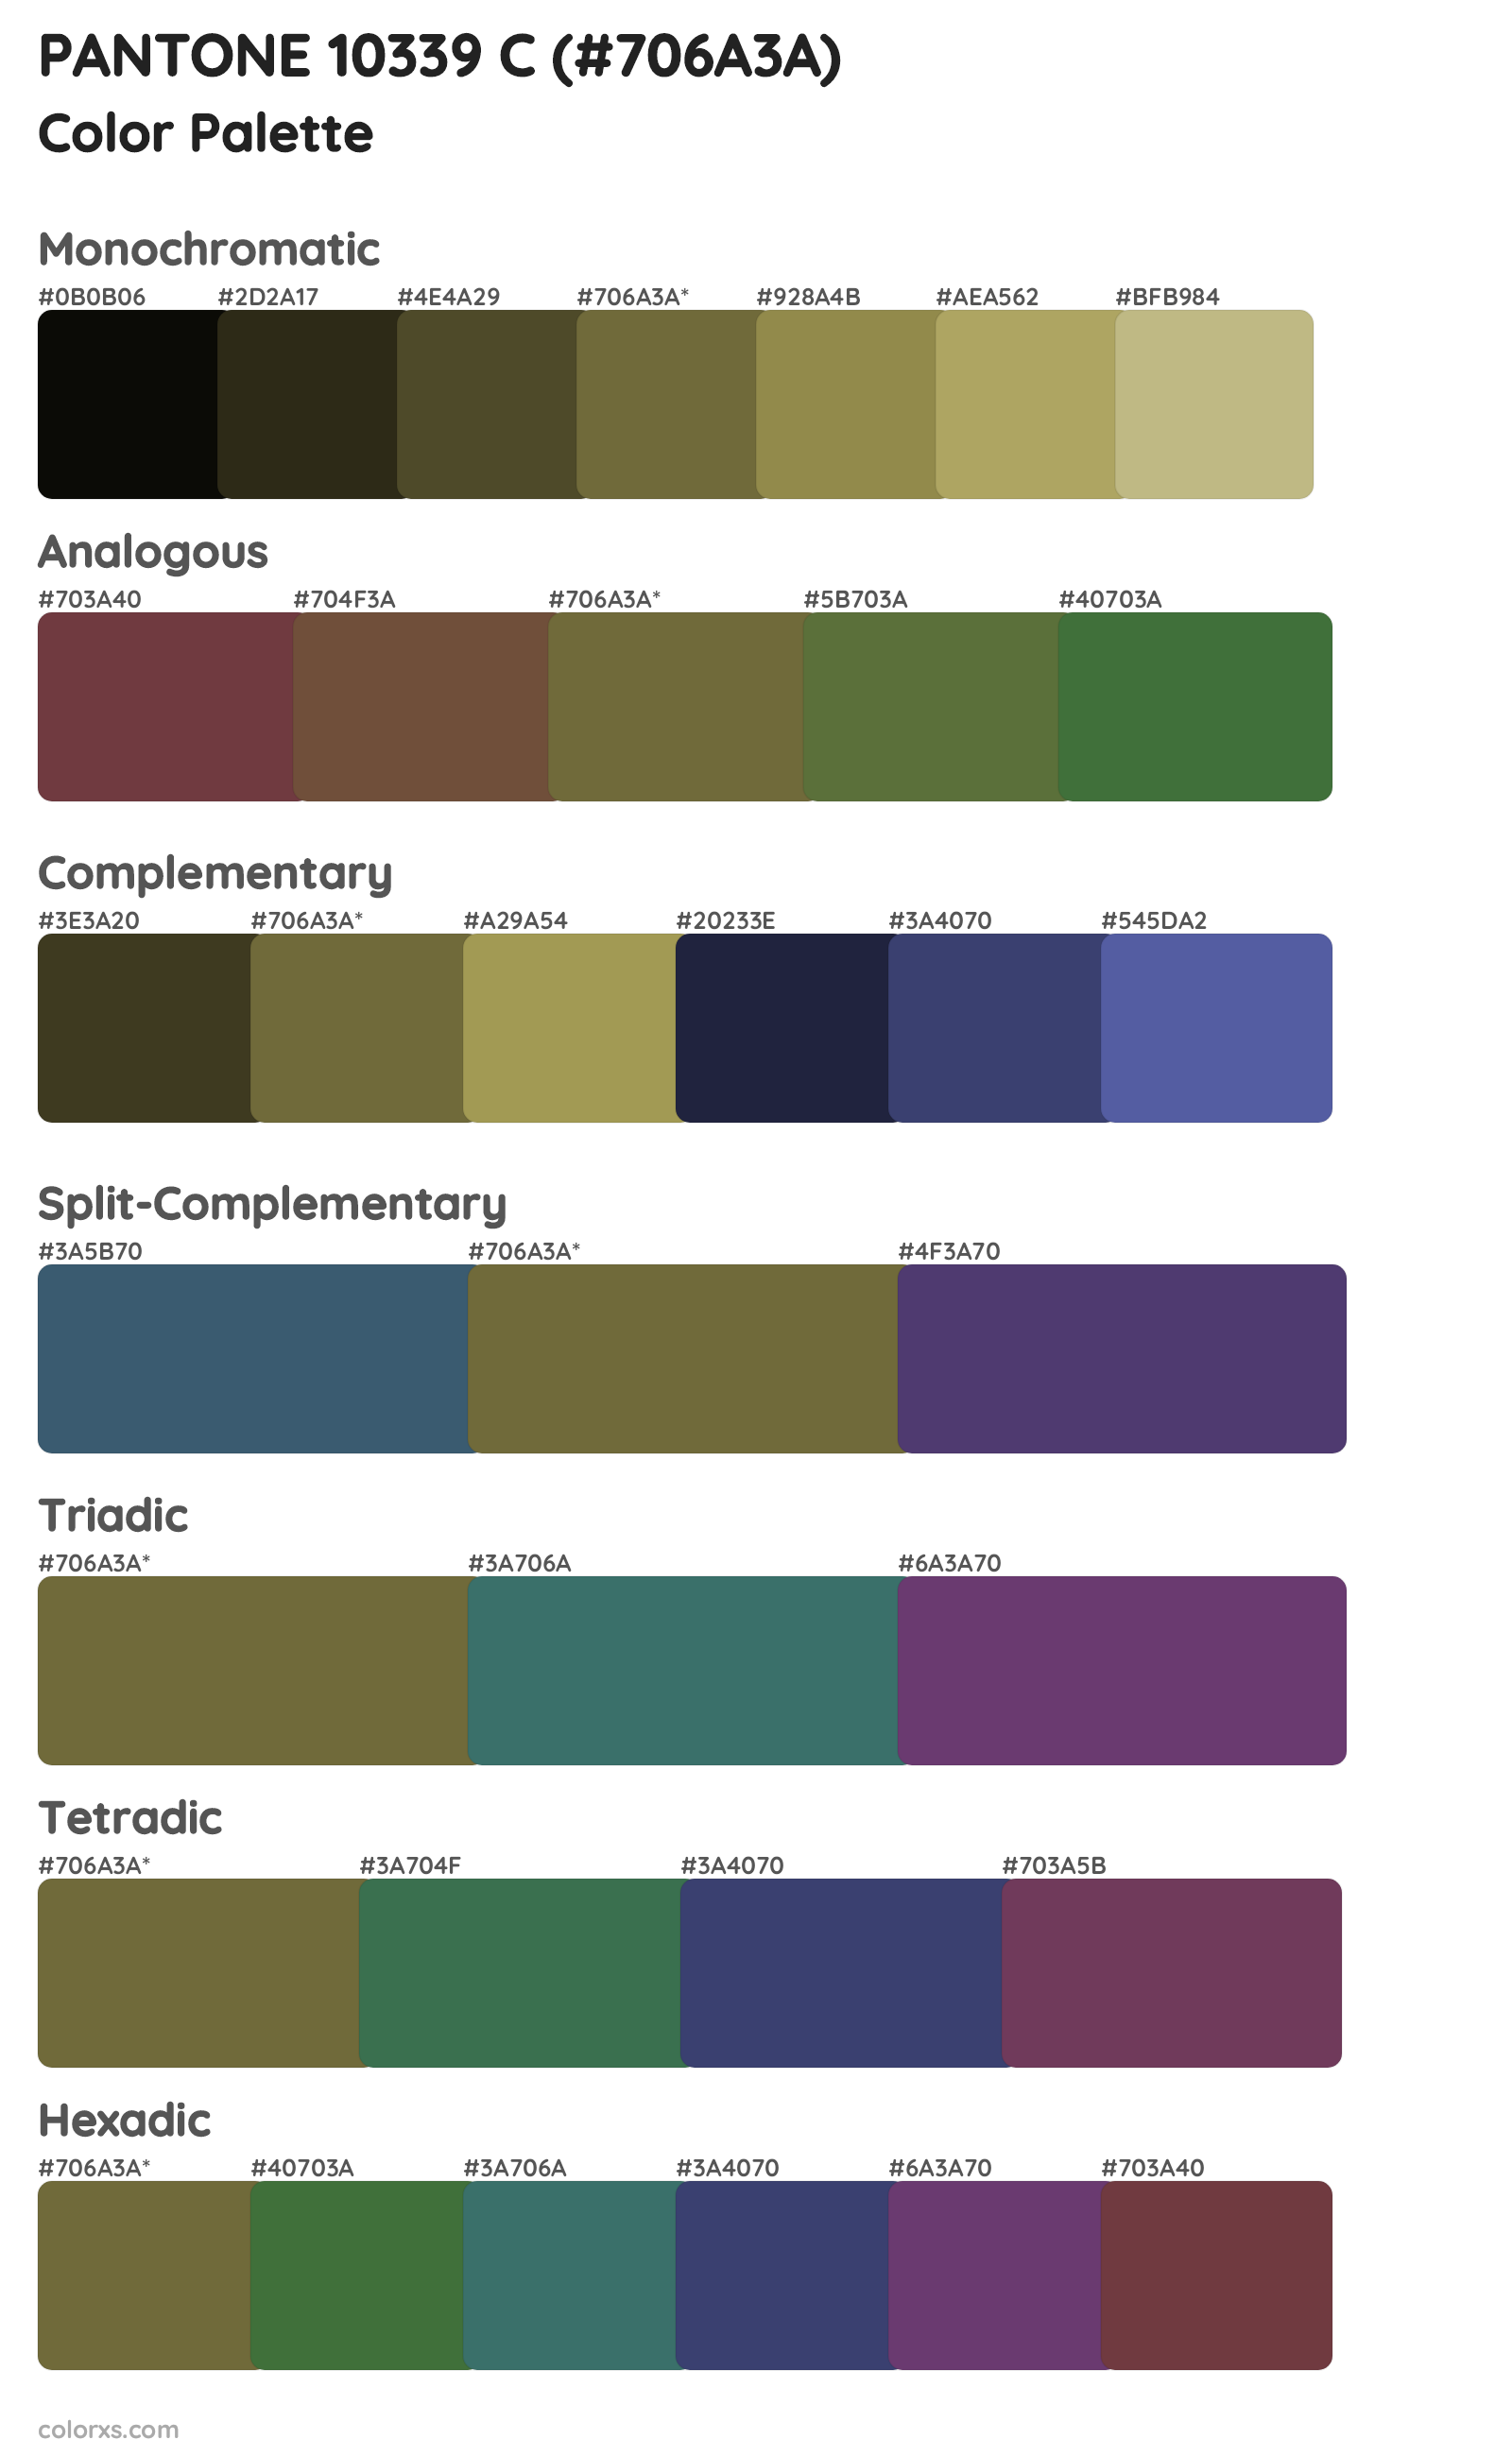 PANTONE 10339 C Color Scheme Palettes